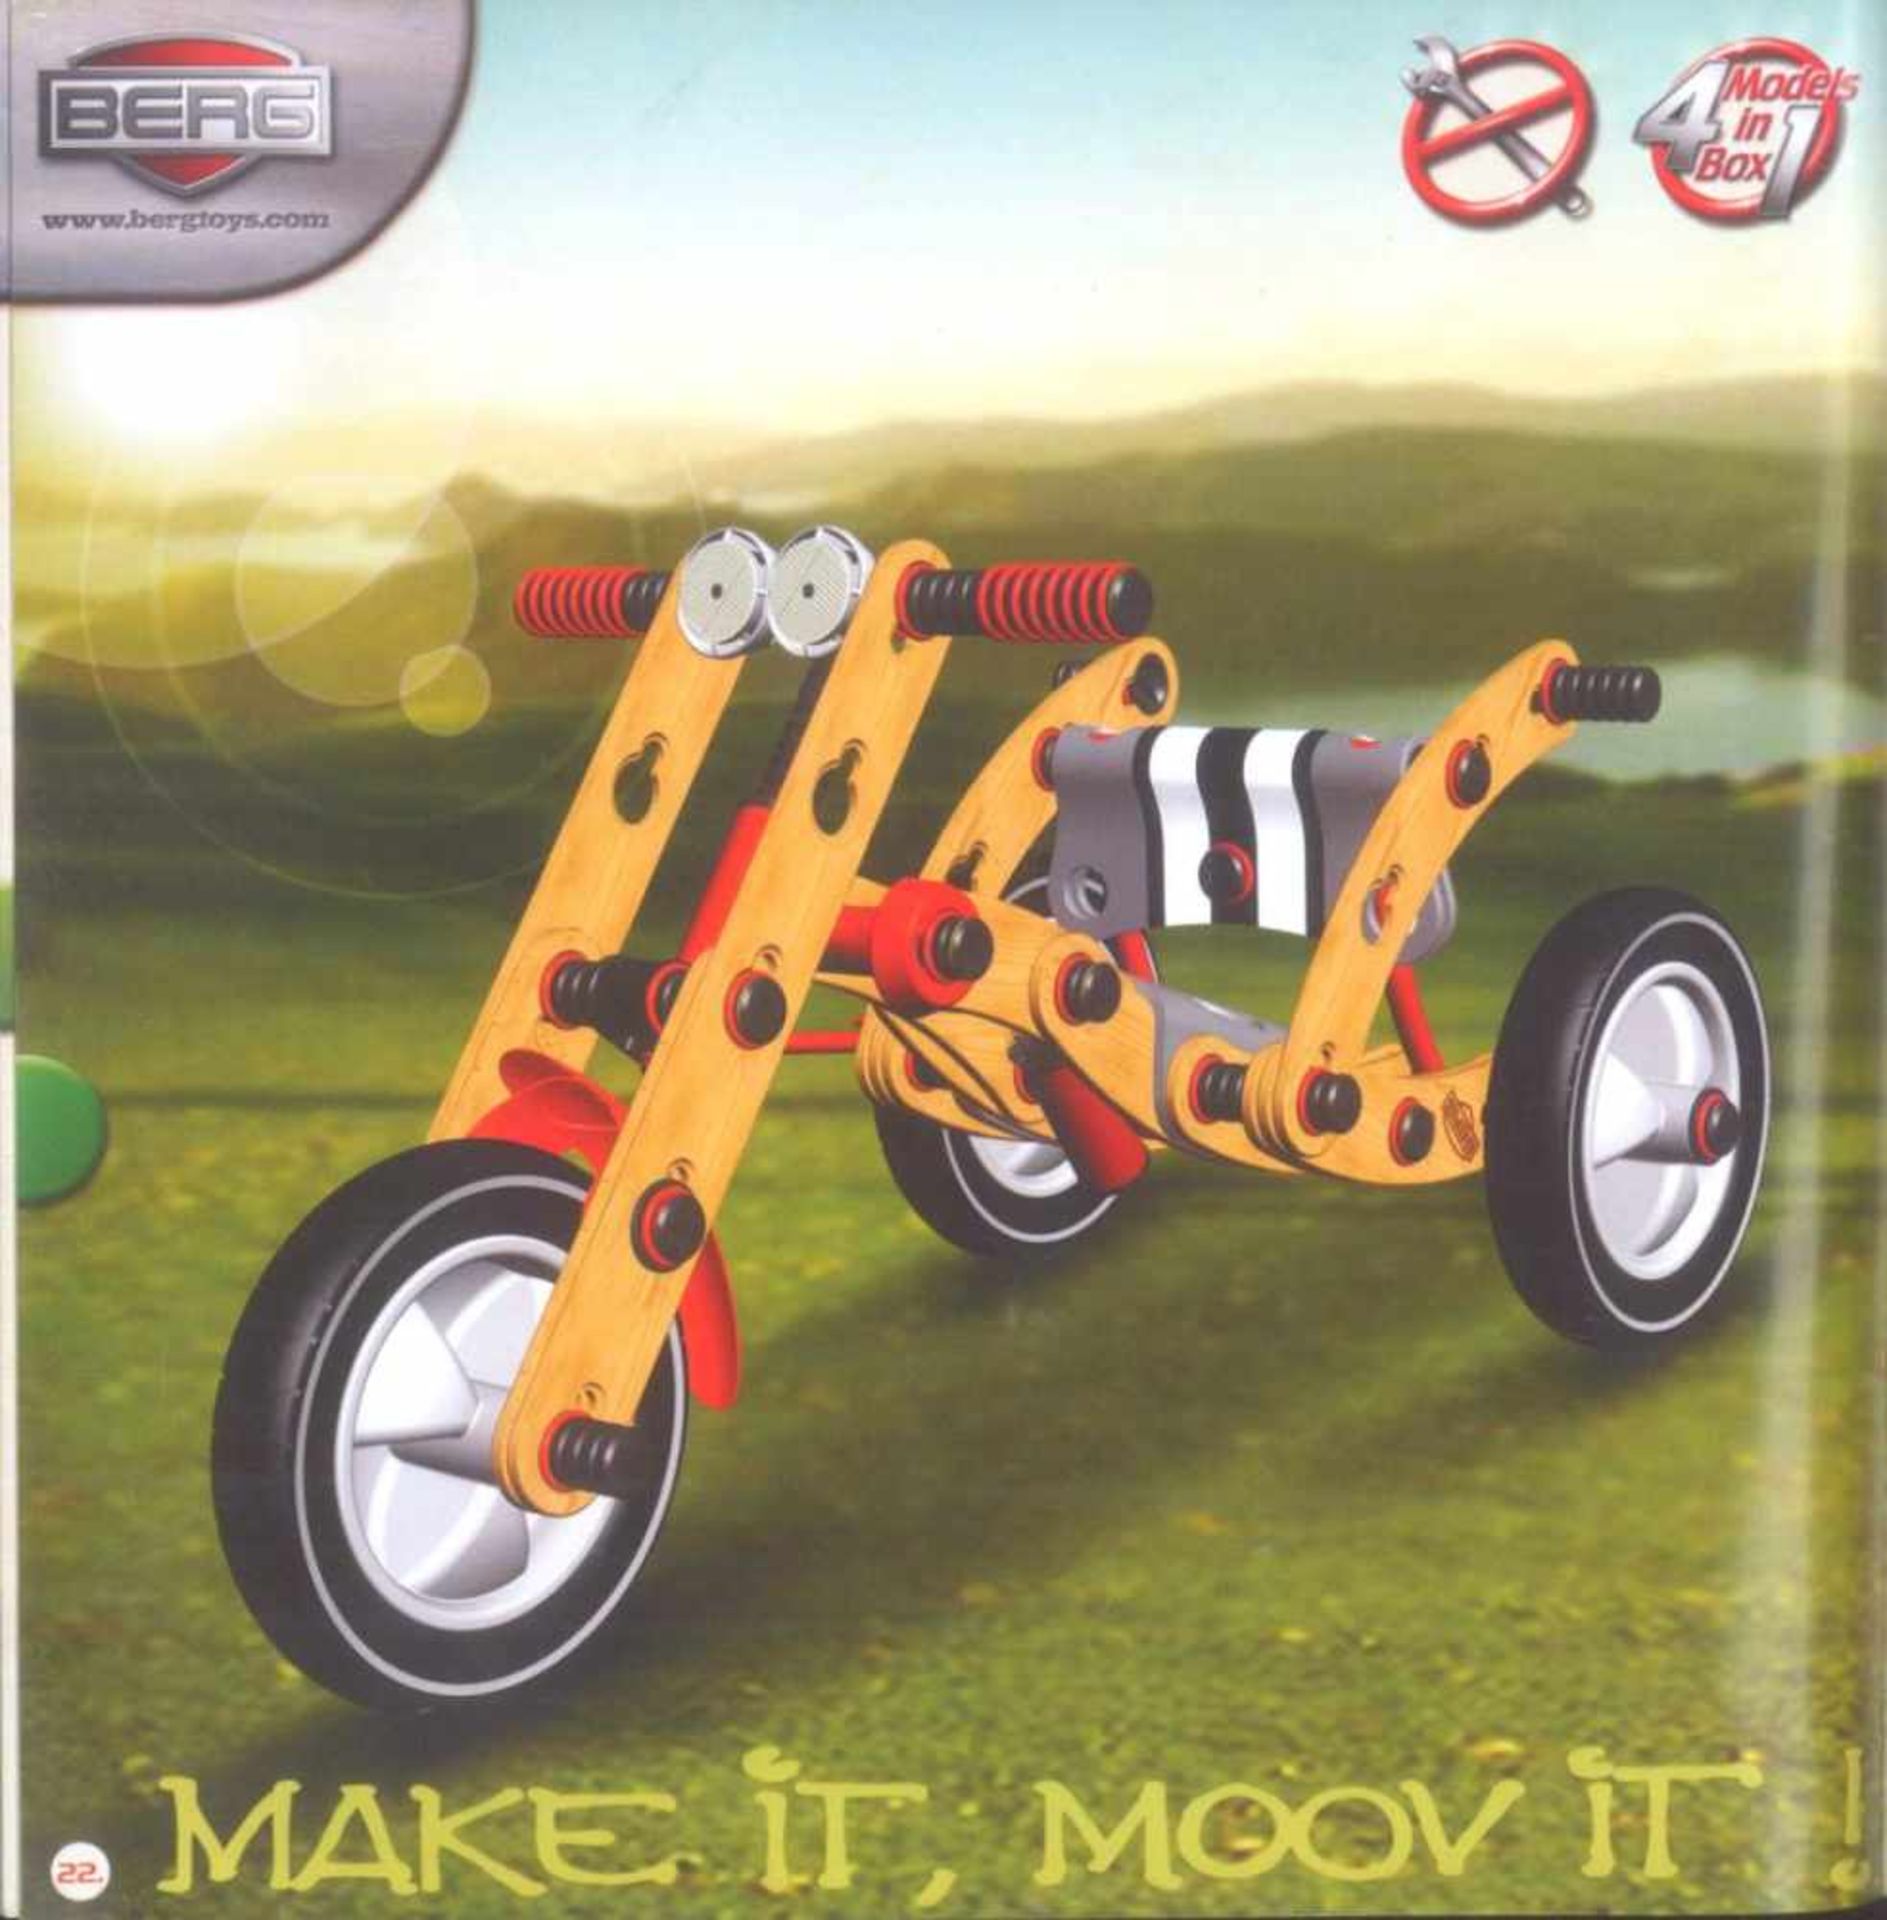 Berg Moov Street Kit 01Holzbausatz für Kinder, zum Eigenbau eines Dreirades oderAutos.